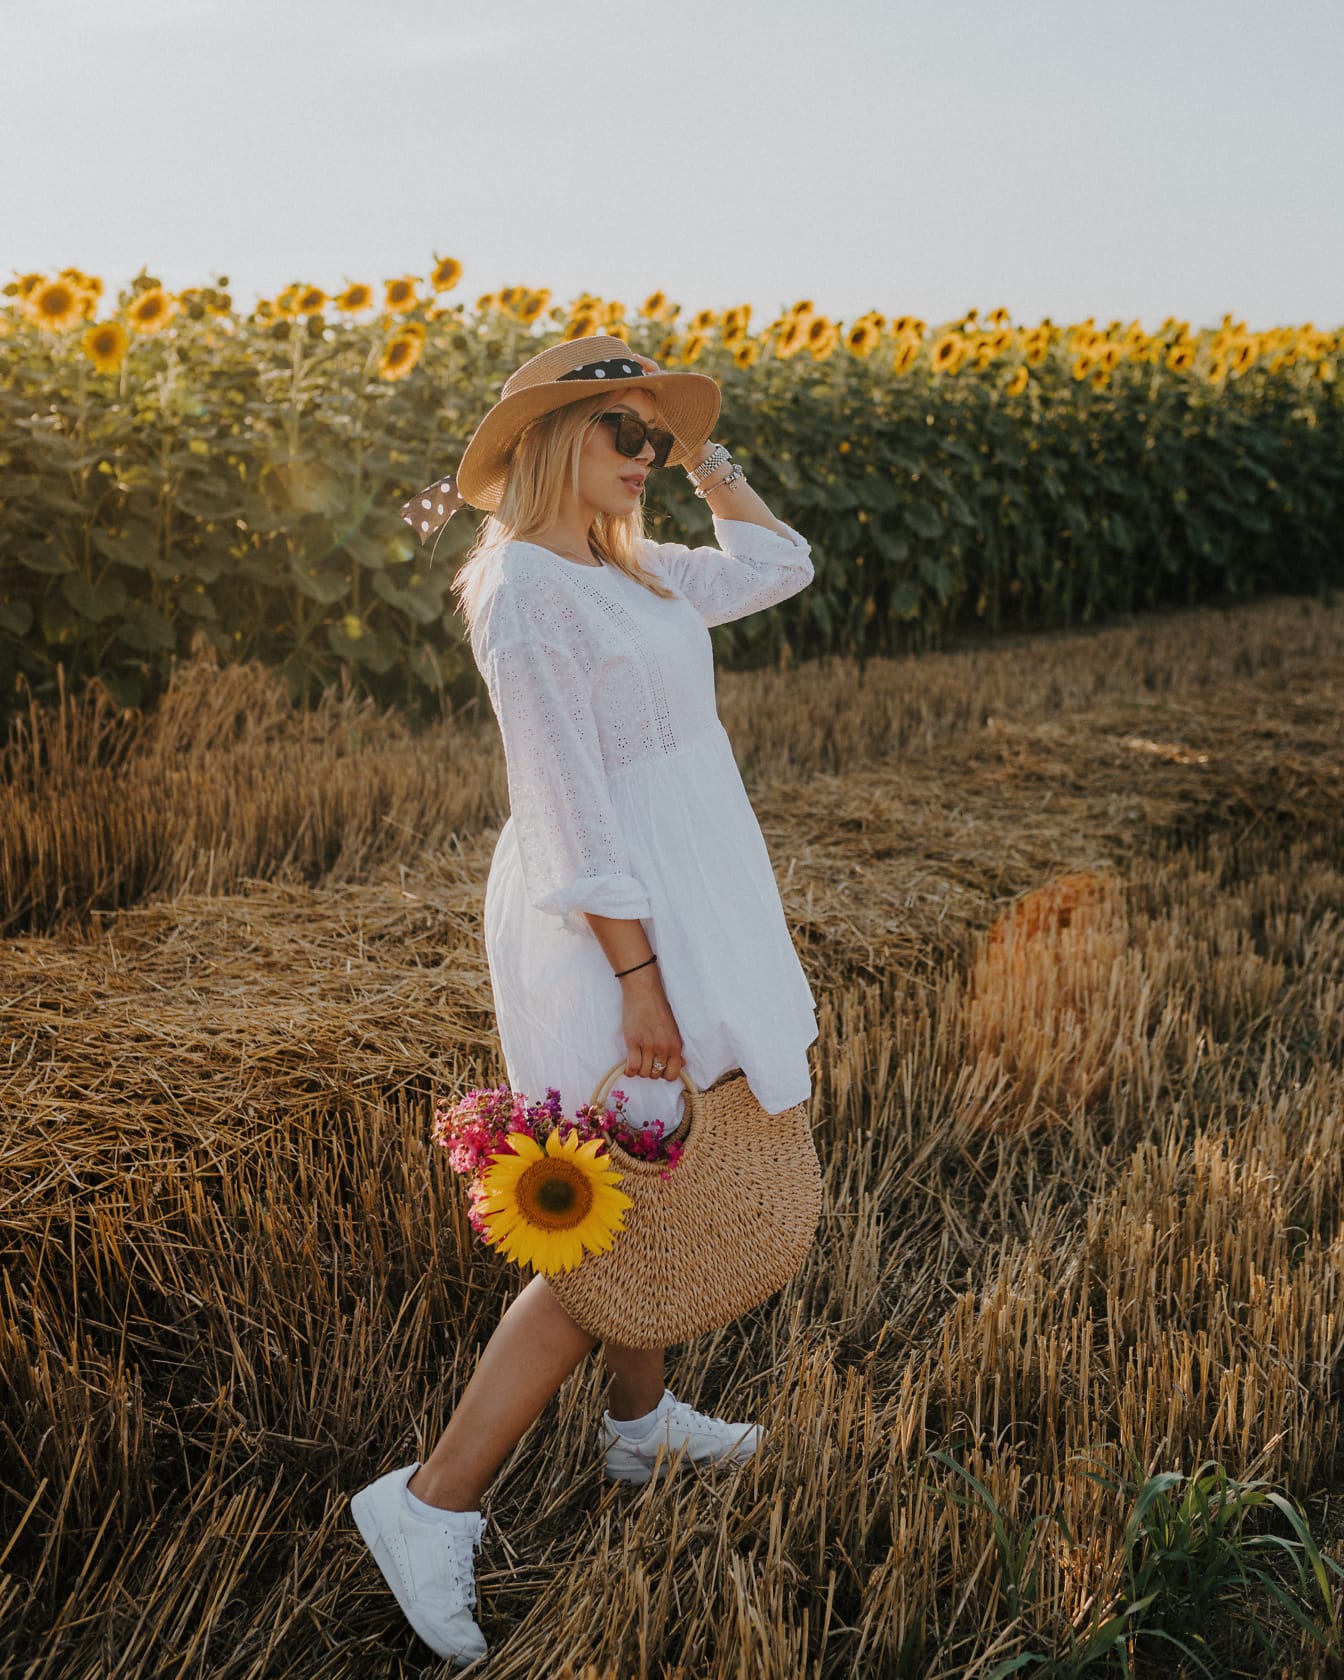 Mulher no campo de trigo em um vestido branco e chapéu segurando um saco e flores